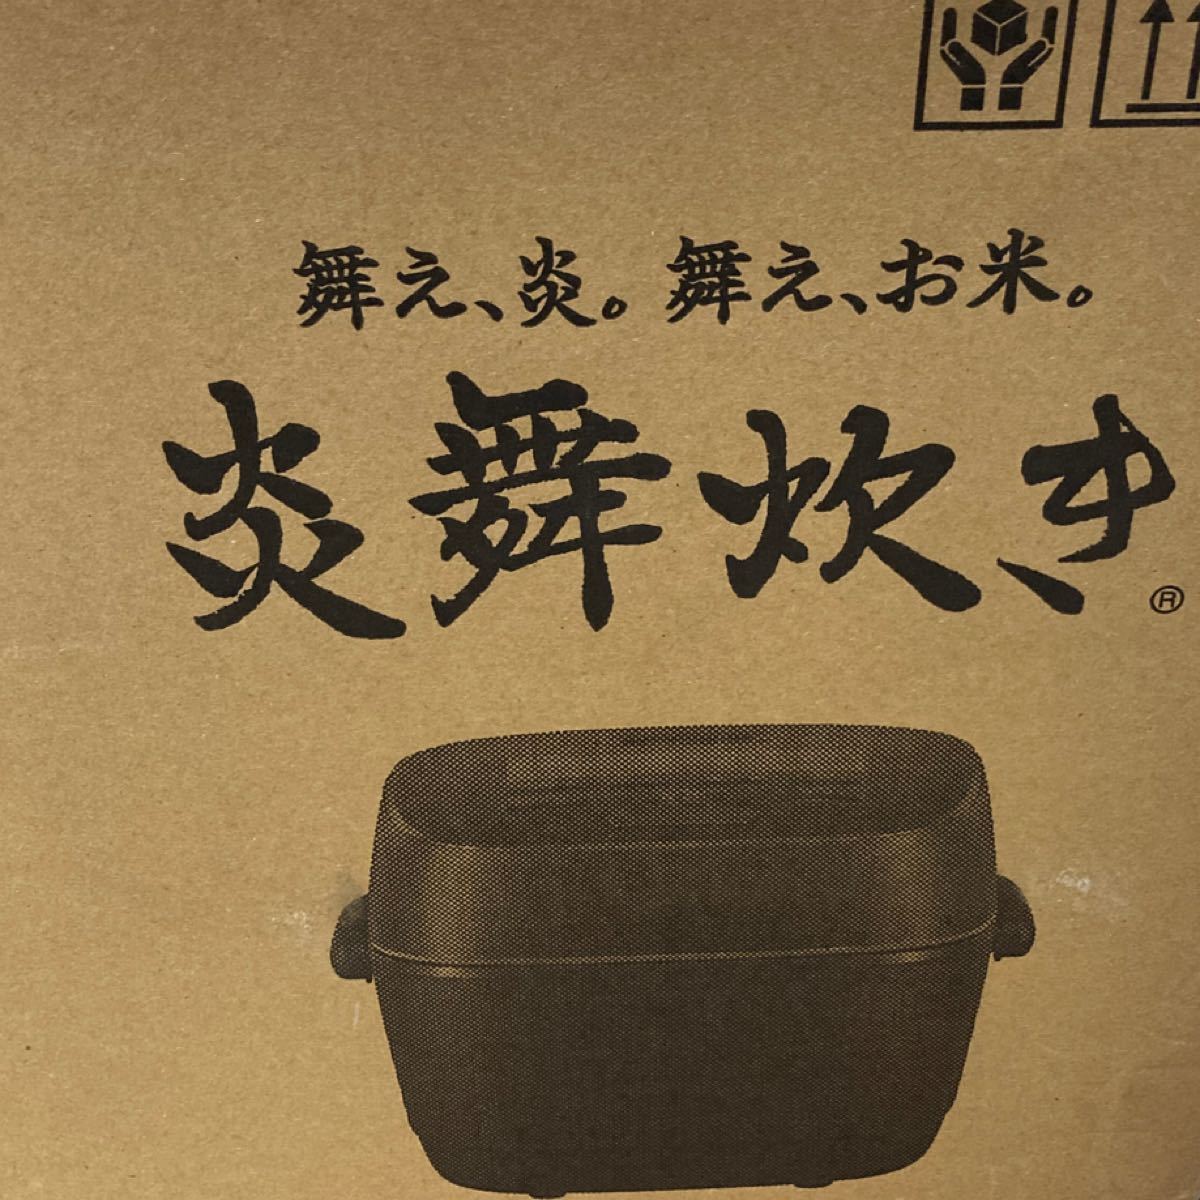 新品 象印 極め炊き NW-PT10-BZ 圧力IH炊飯ジャー 5.5合 ブラック